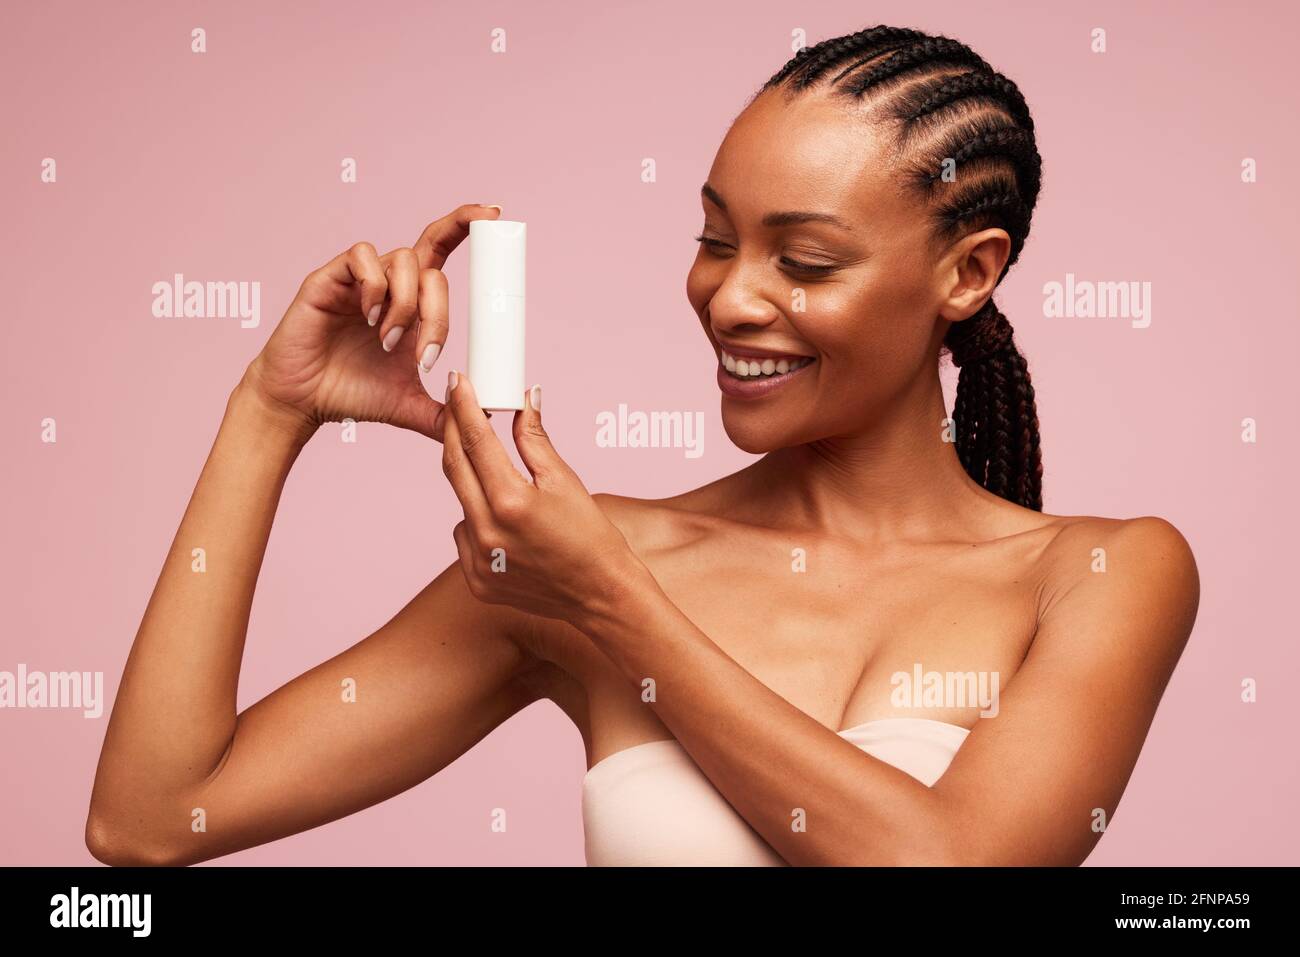 Femme africaine heureuse tenant un produit cosmétique. Modèle féminin avec  belle peau montrant un produit de soin de la peau Photo Stock - Alamy